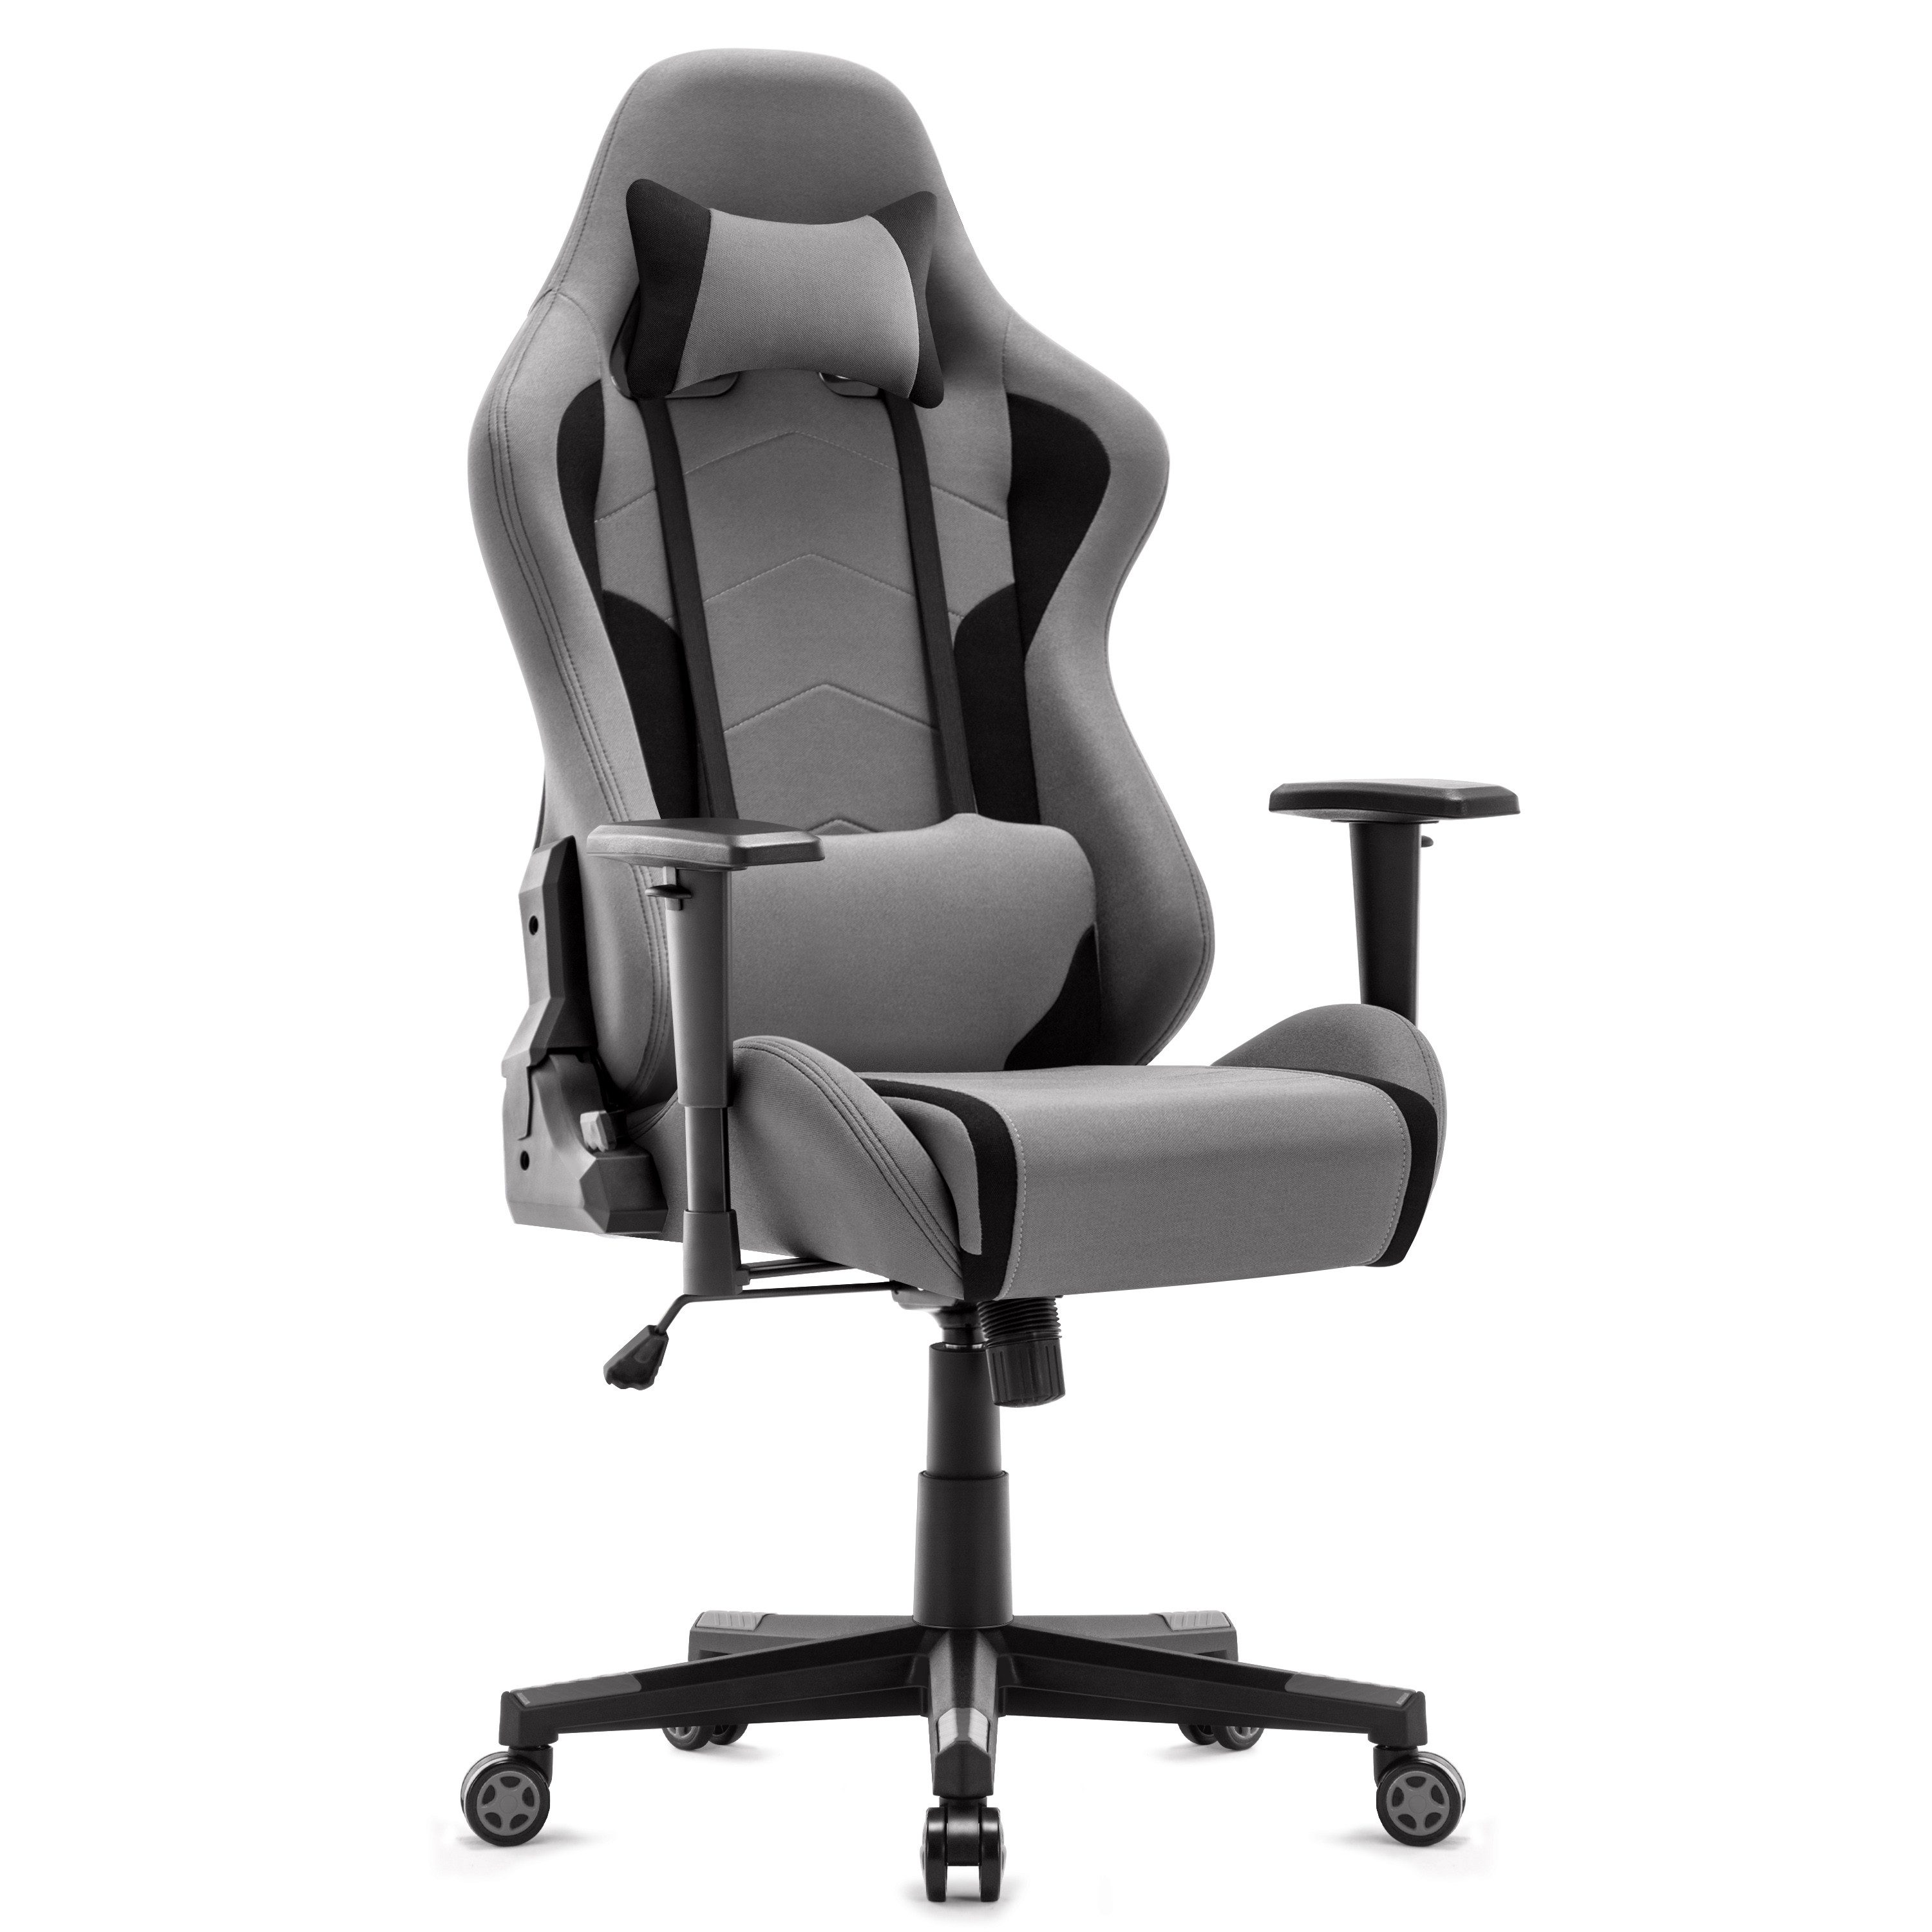 Intimate WM Heart Gaming Chair Ergonomischer Bürostuhl, Stoff Drehstuhl, Schreibtischstuhl mit Verstellbarer Armlehnen und Hoher Rückenlehne